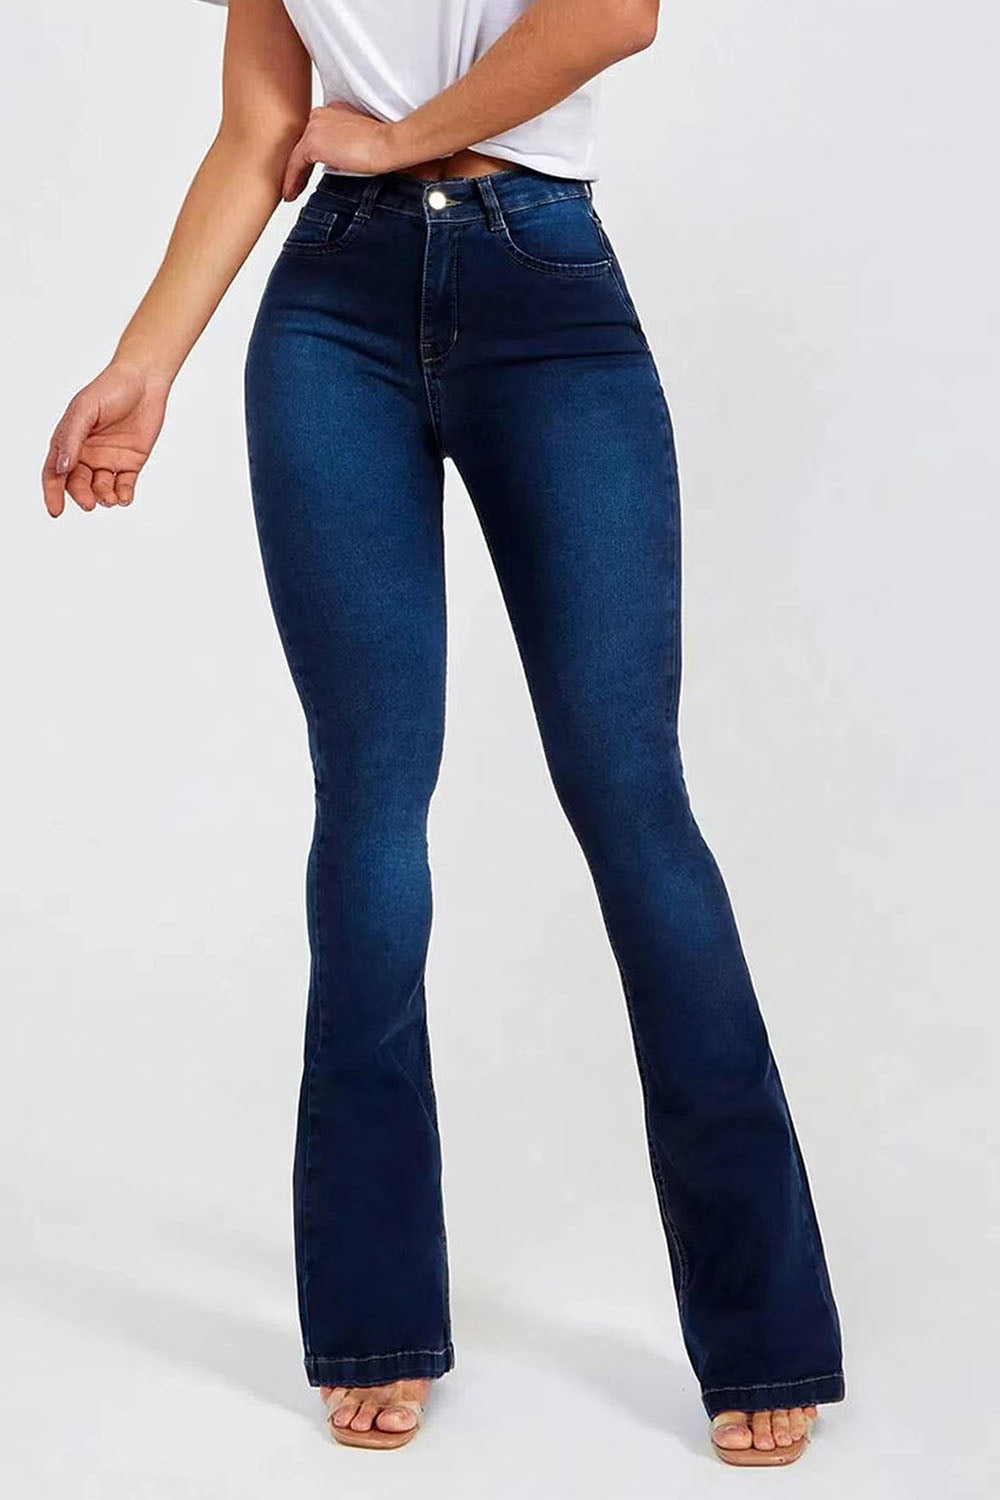 Retro Buttoned Long Jeans - Bottoms - Pants - 5 - 2024